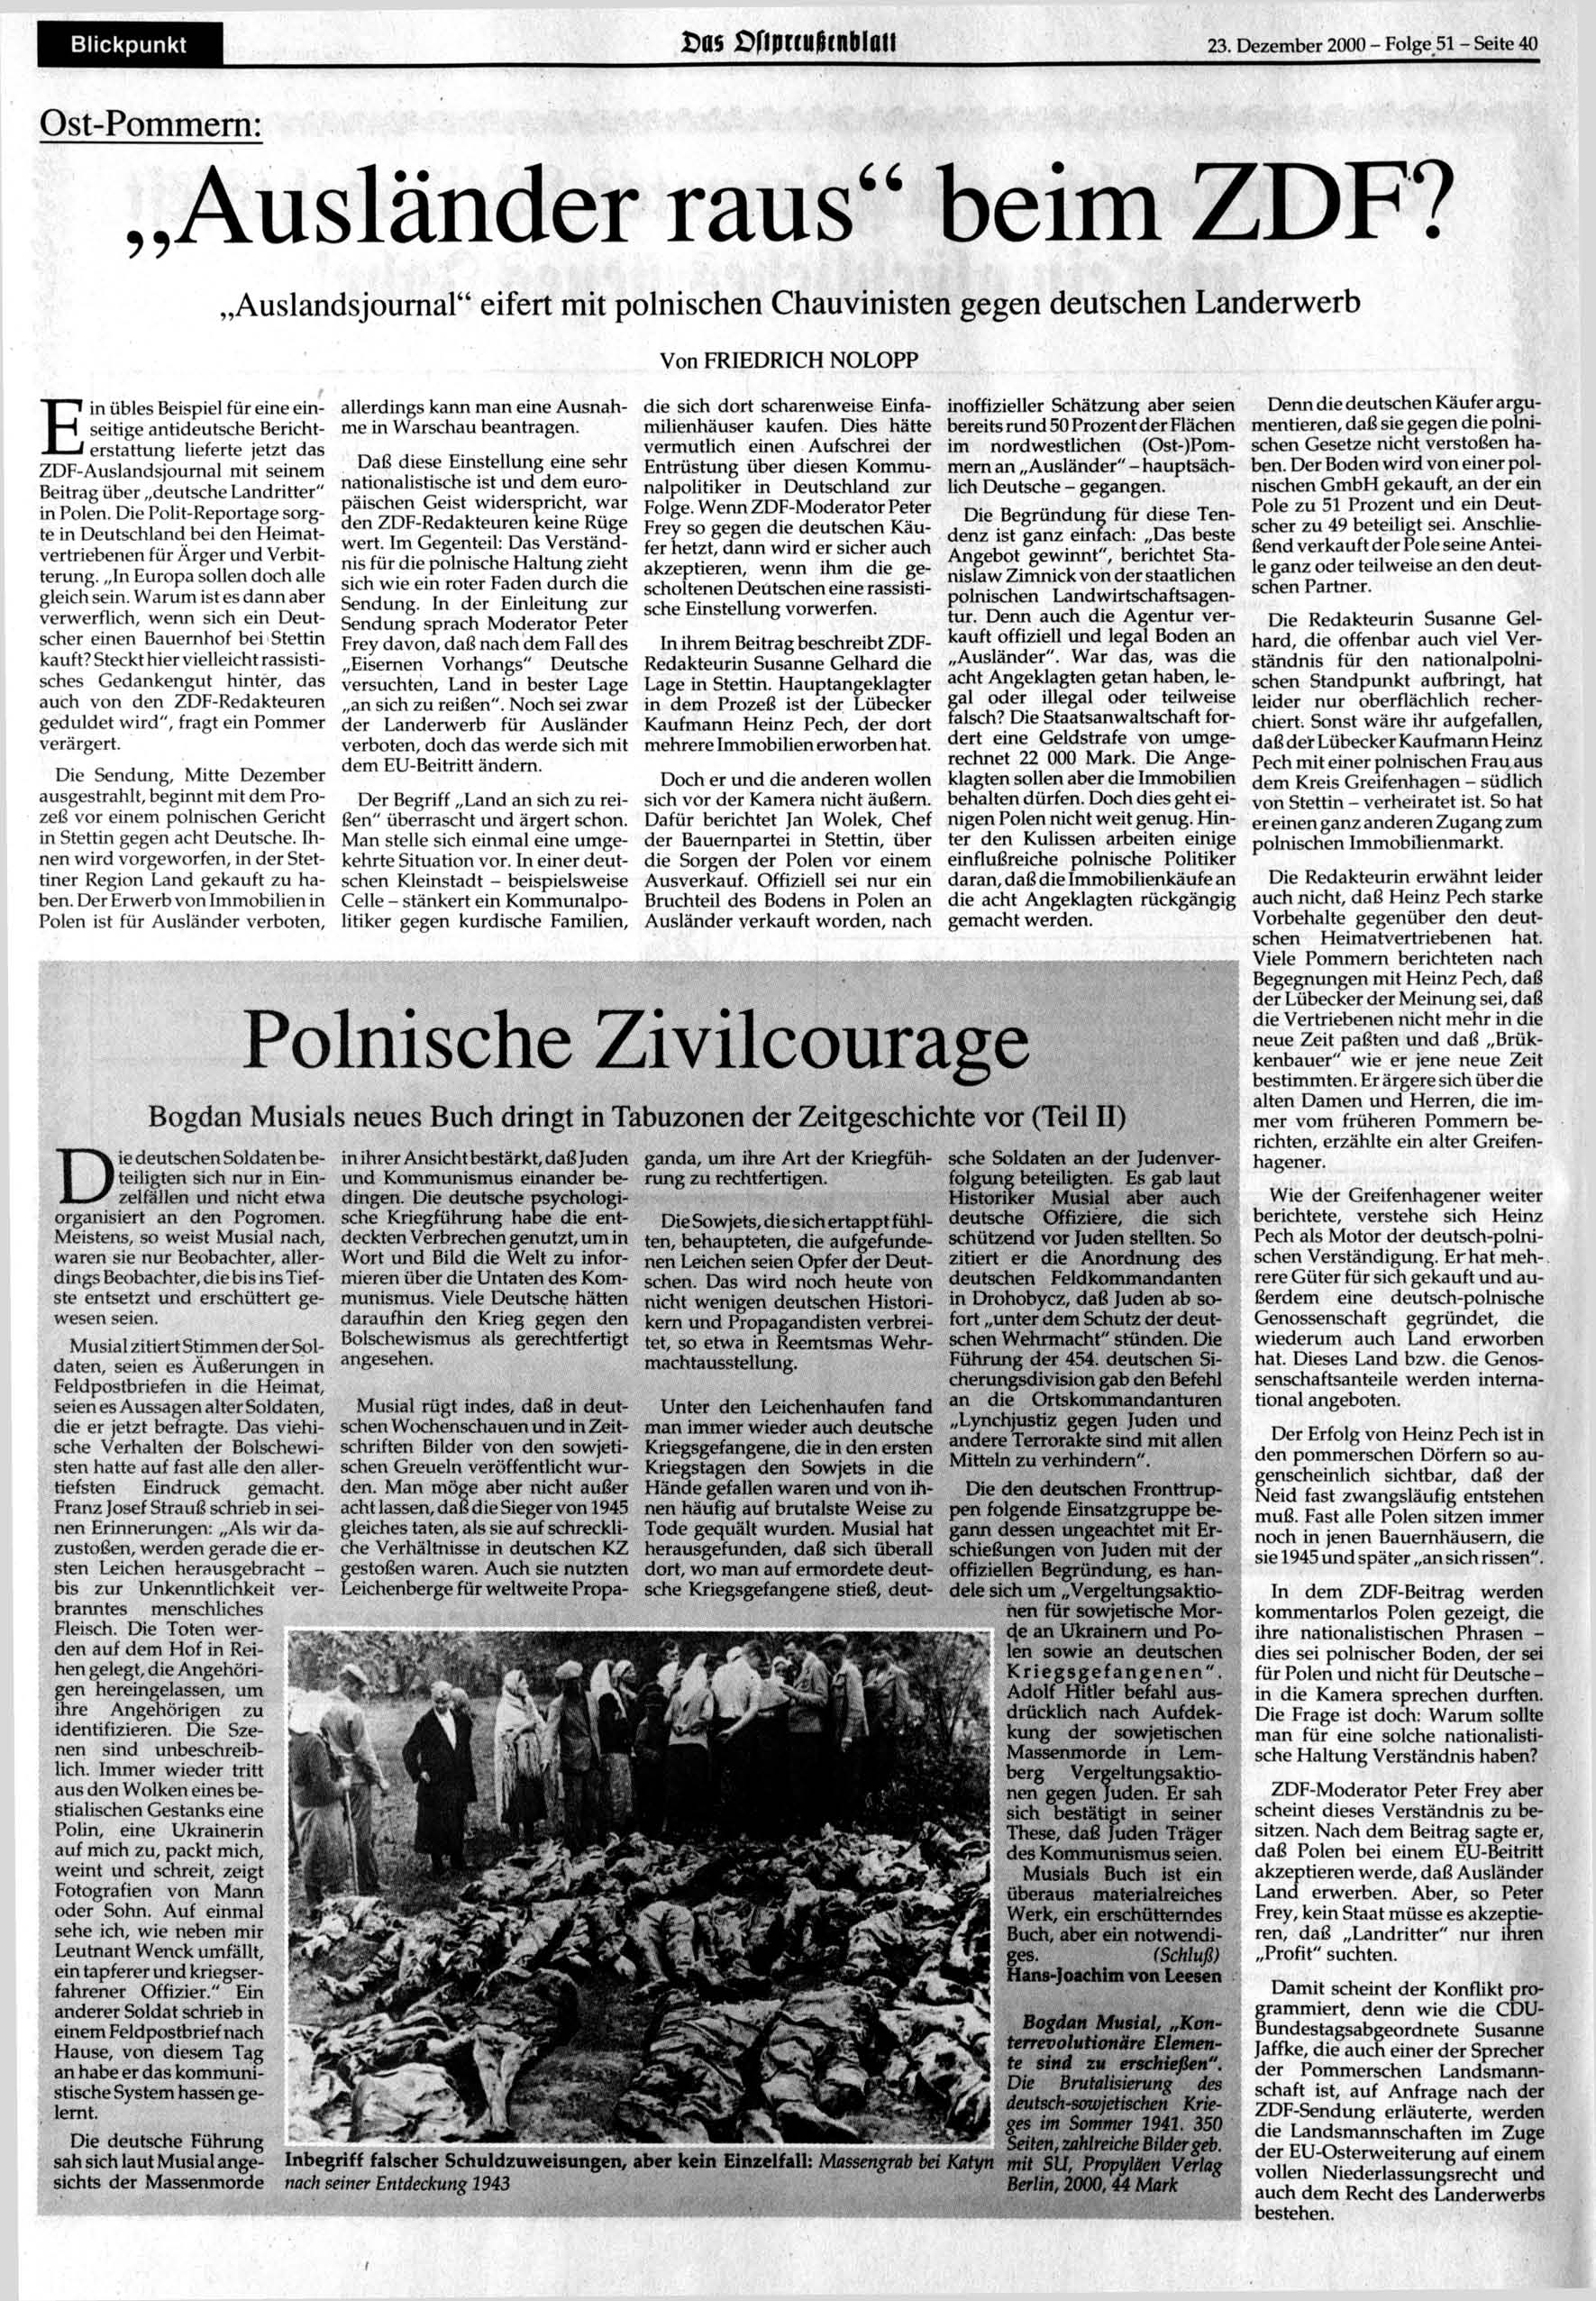 Blickpunkt Das Dfiprtufttnblaii 23. Dezember 2000 - Folge 51 - Seite 40 Ost-Pommern: Ausländer raus" beim Z D F?